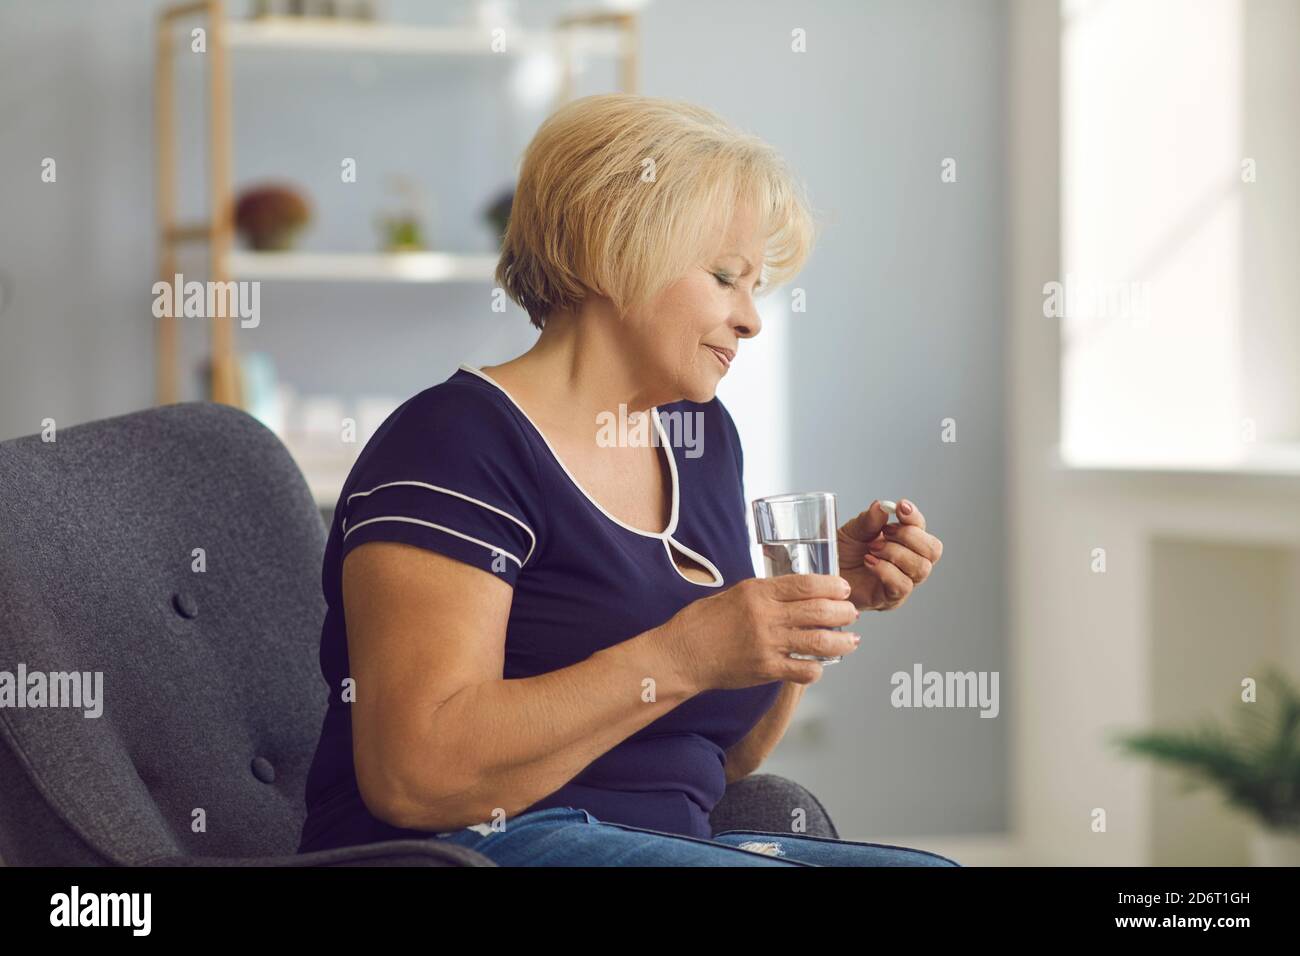 Mujer sonriente madura sentada en el sillón y tomando la píldora médica y agua pura en el cristal en las manos Foto de stock